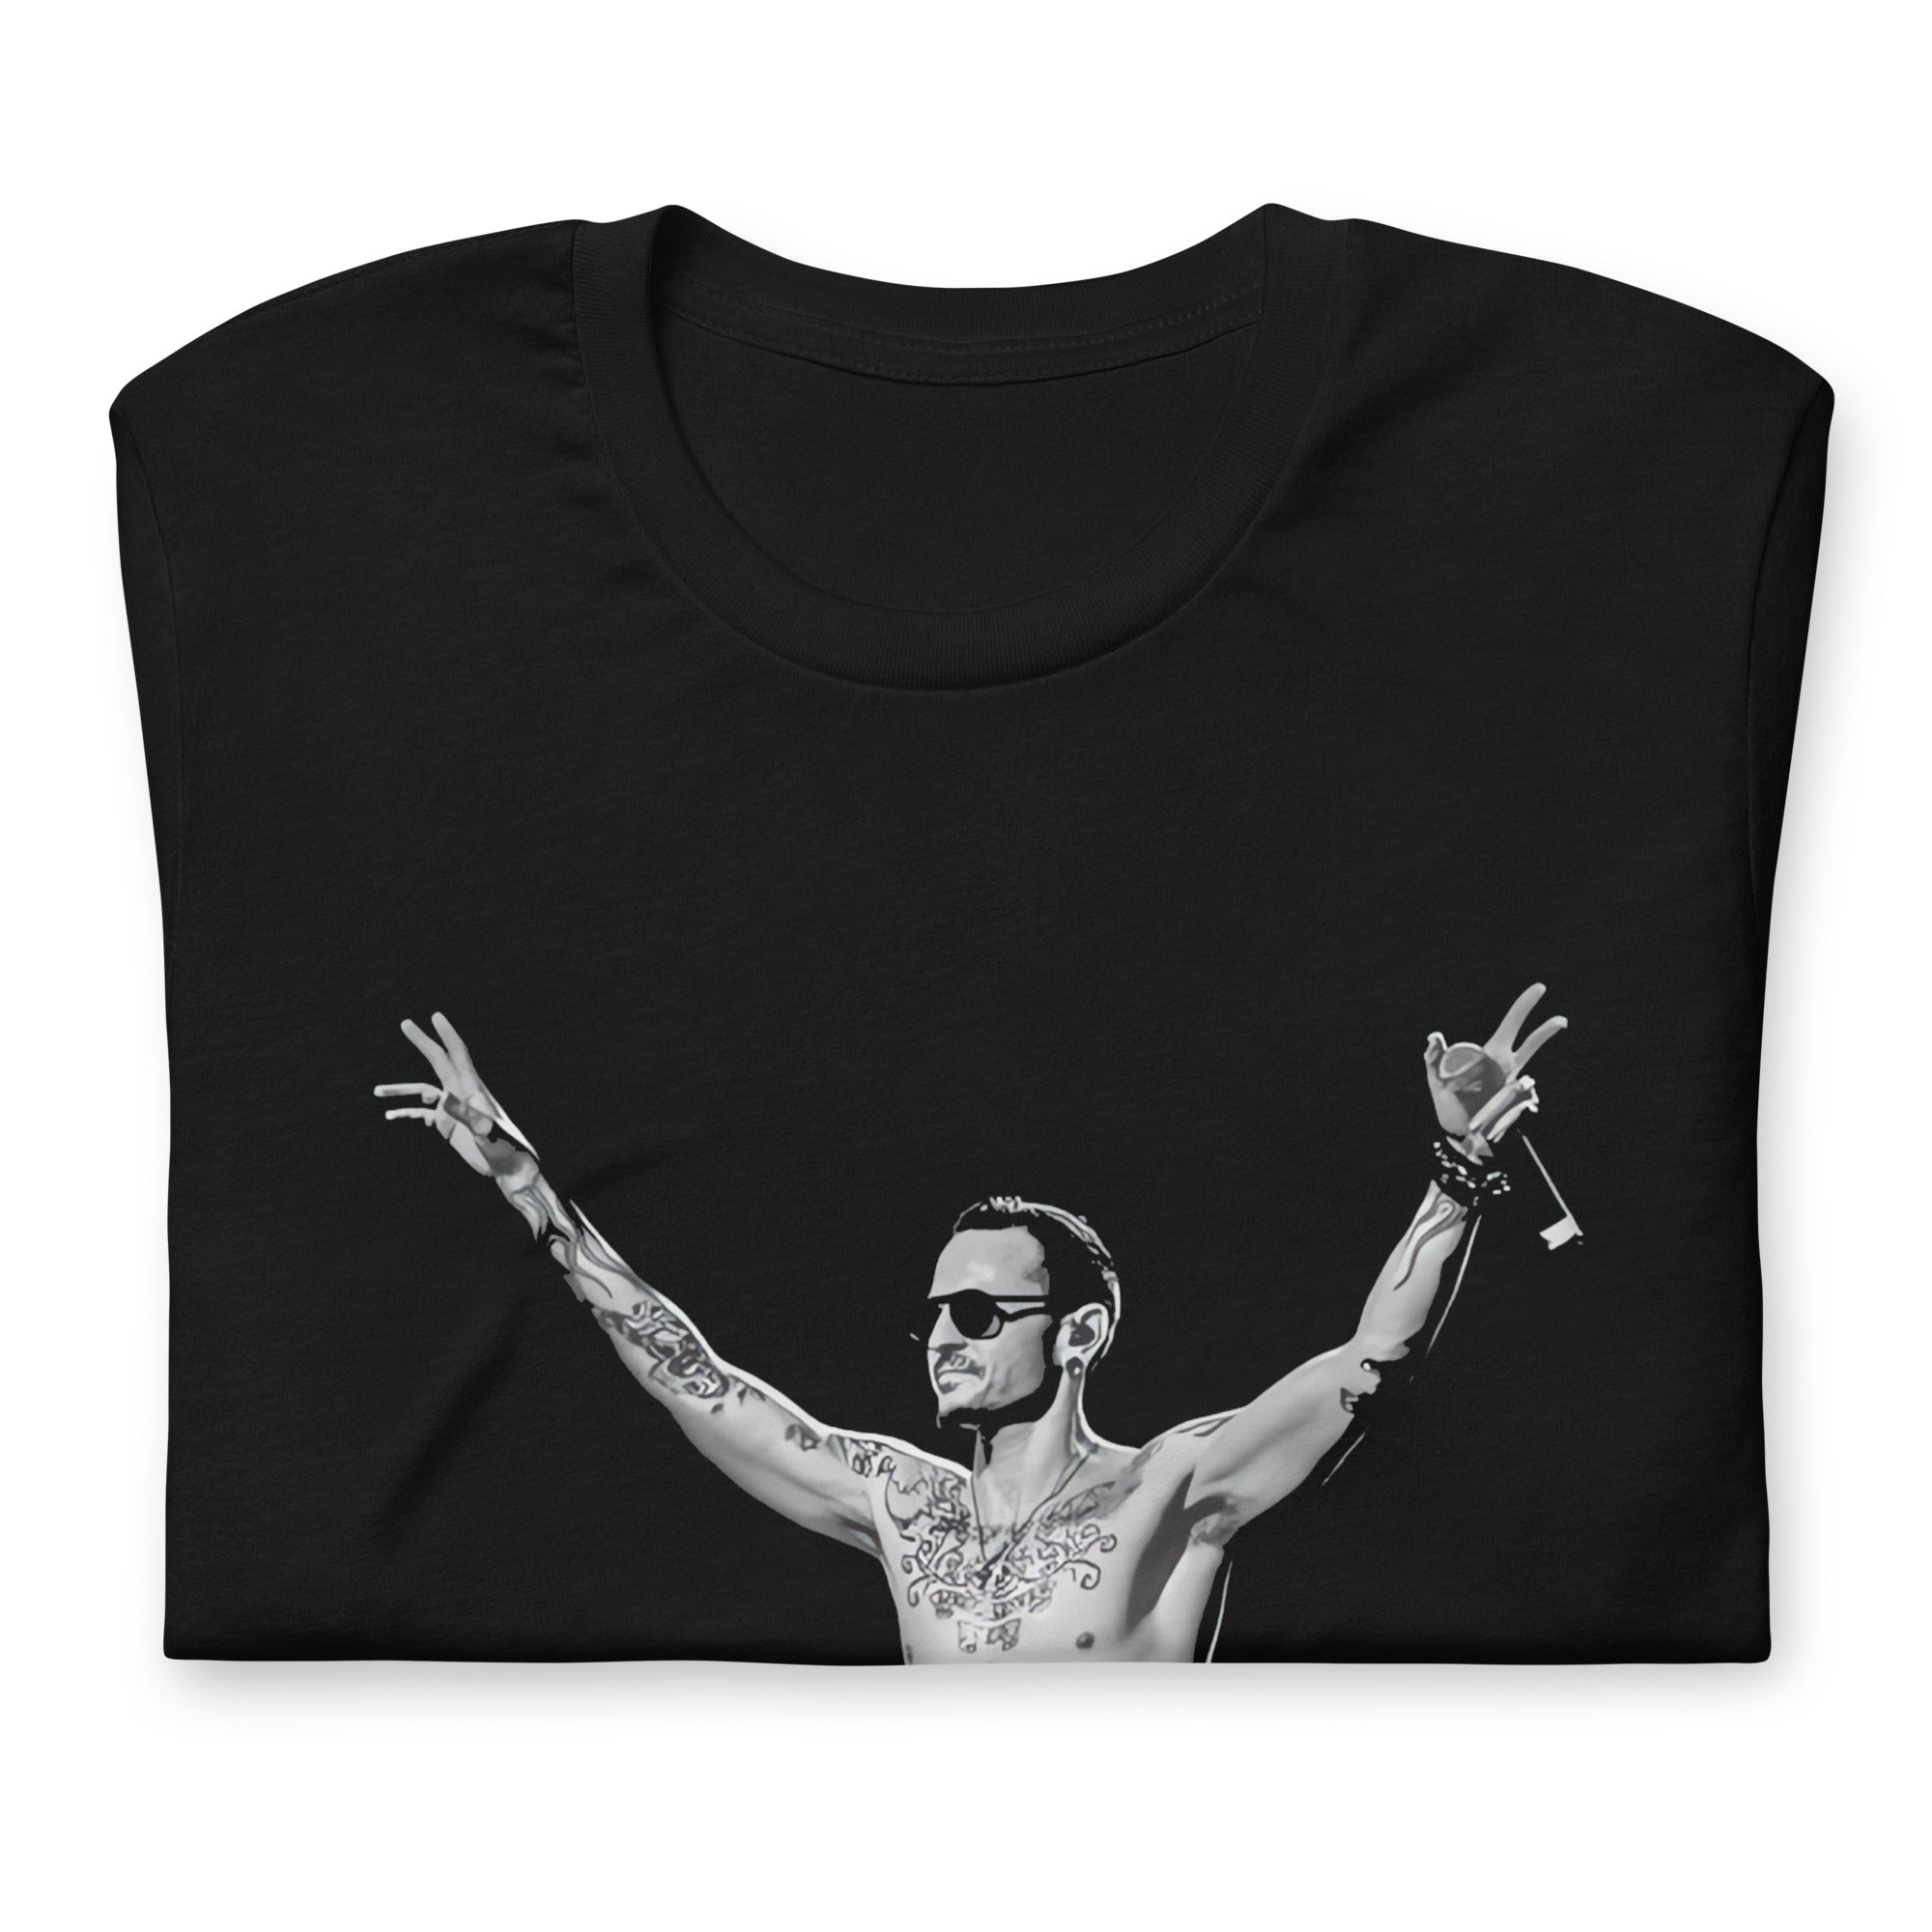 ¡Compra el mejor merchandising en Superstar! Encuentra diseños únicos y de alta calidad en camisetas únicas, Camiseta de chester bennington